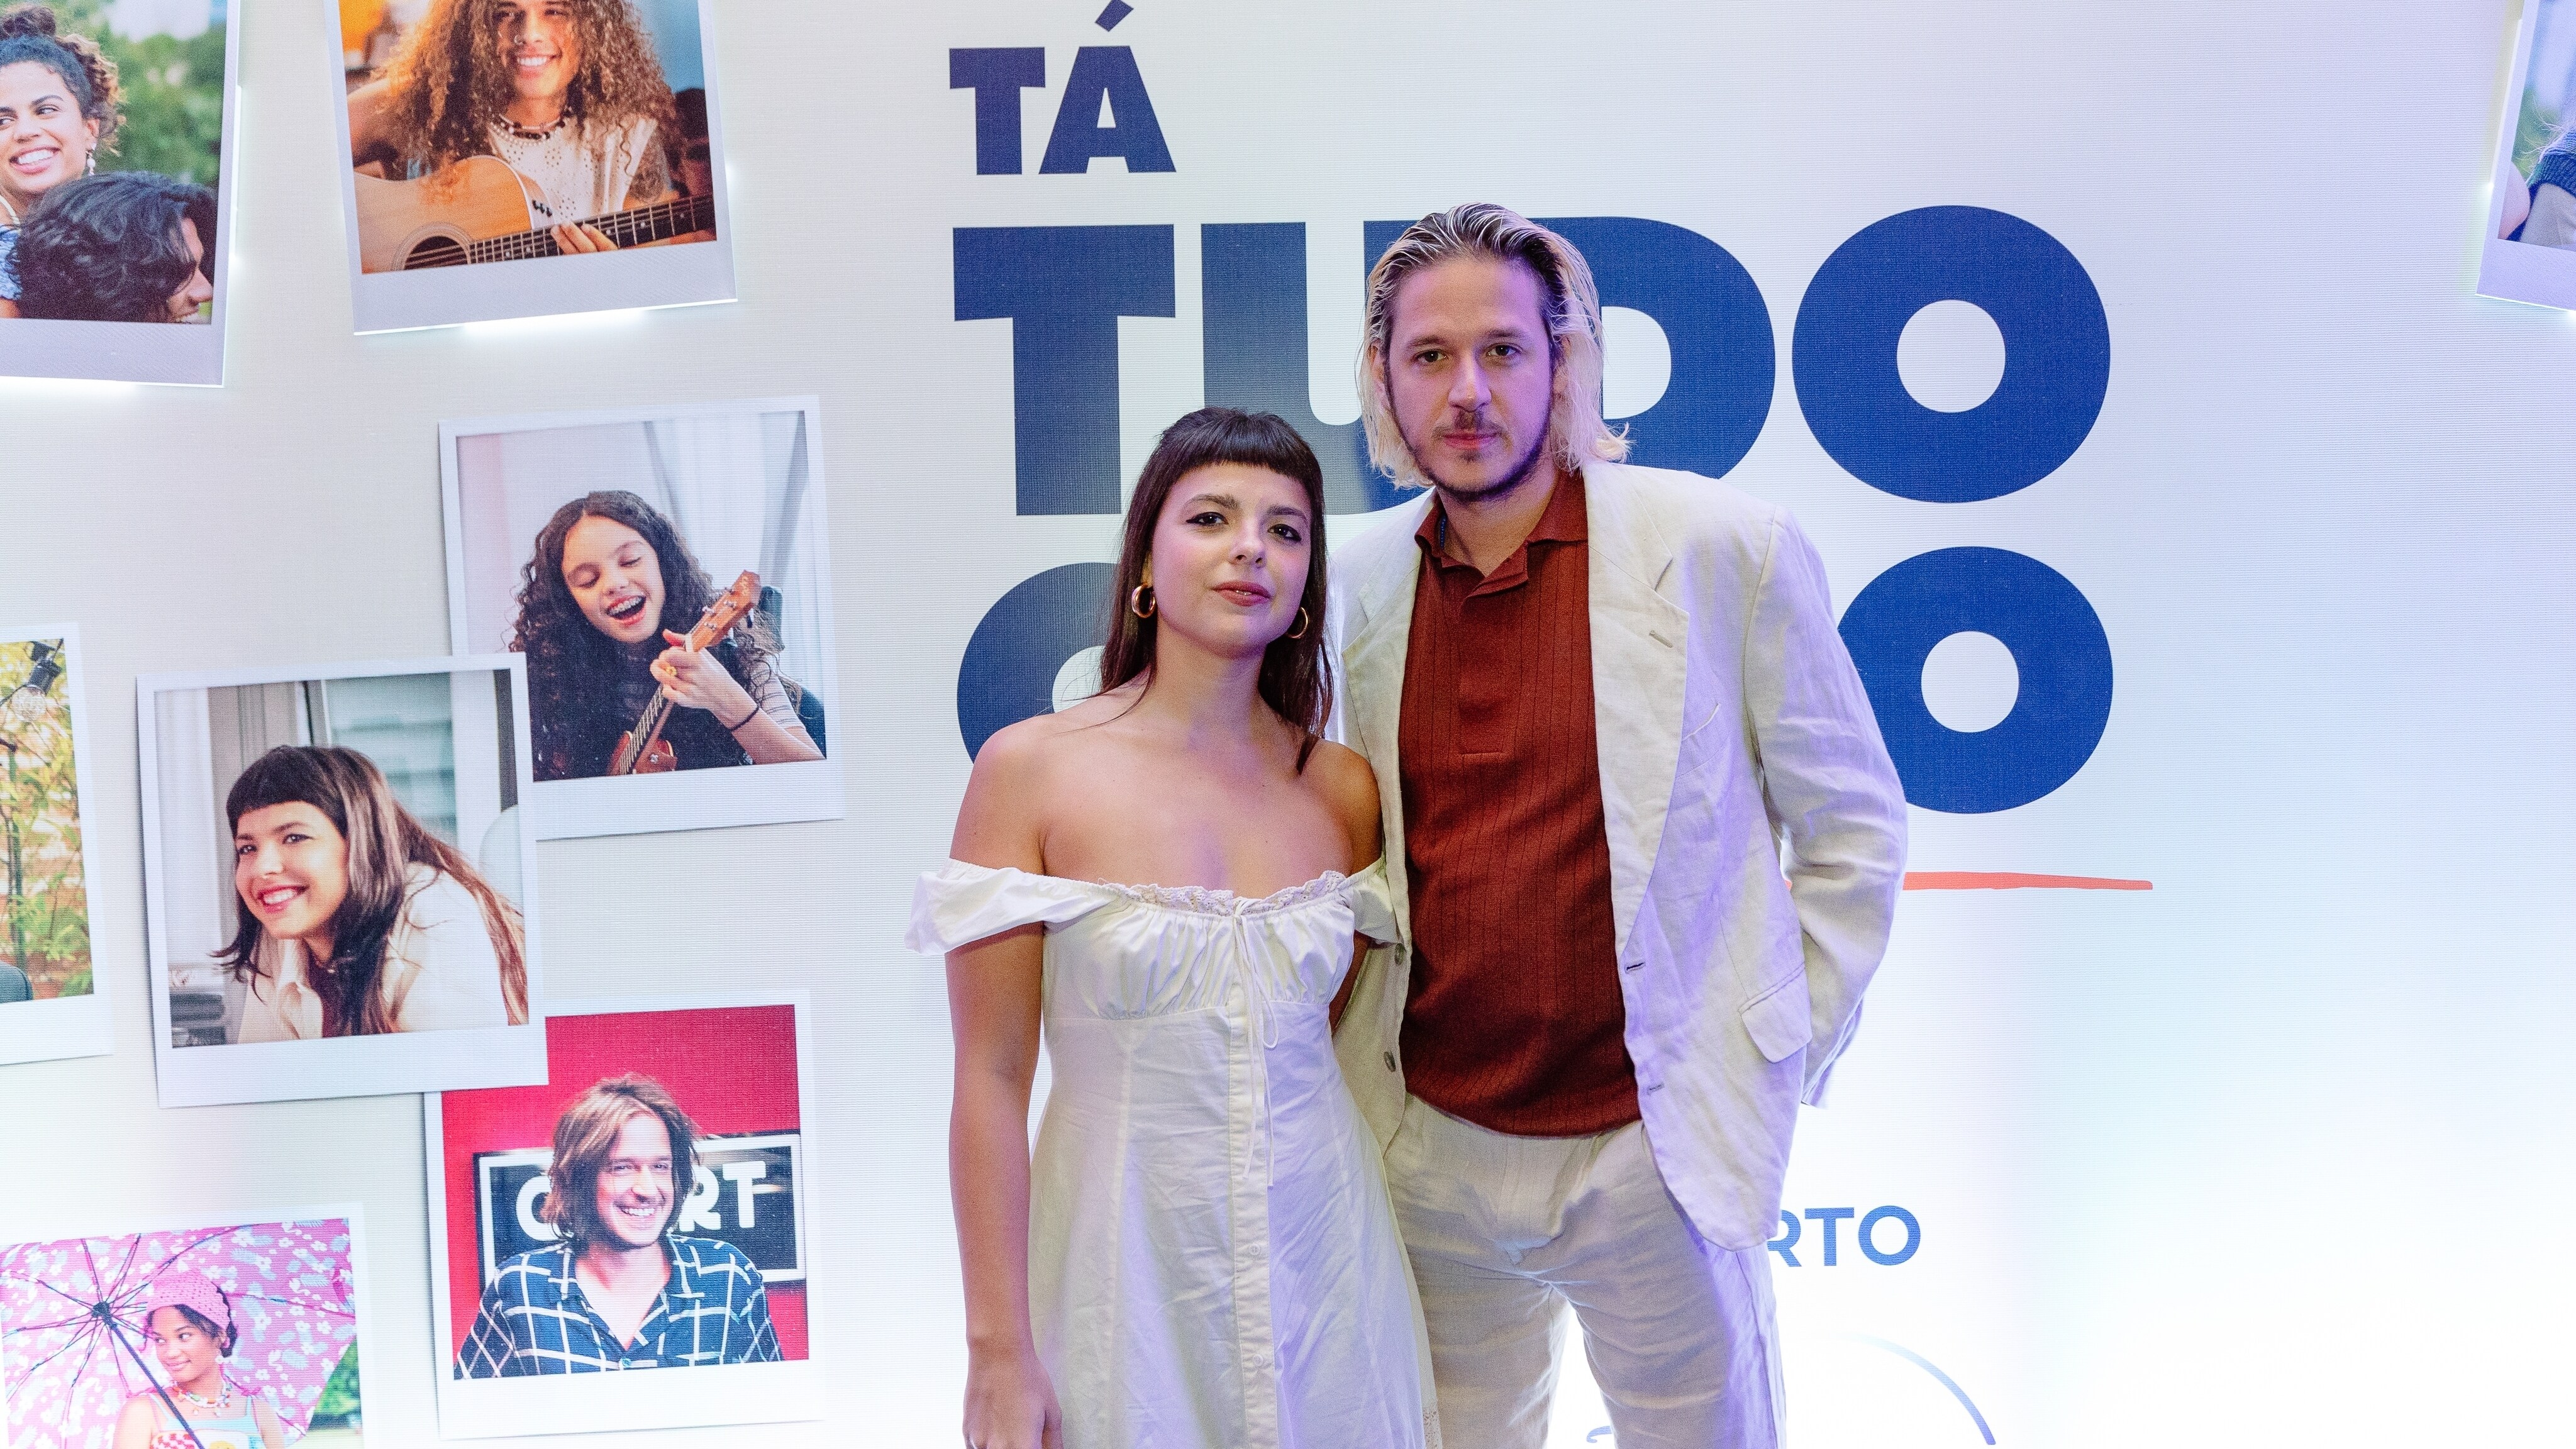 'Tá Tudo Certo': Rubel e Júlia Mestre falam dos bastidores e das diferentes formas de sucesso para os jovens na série